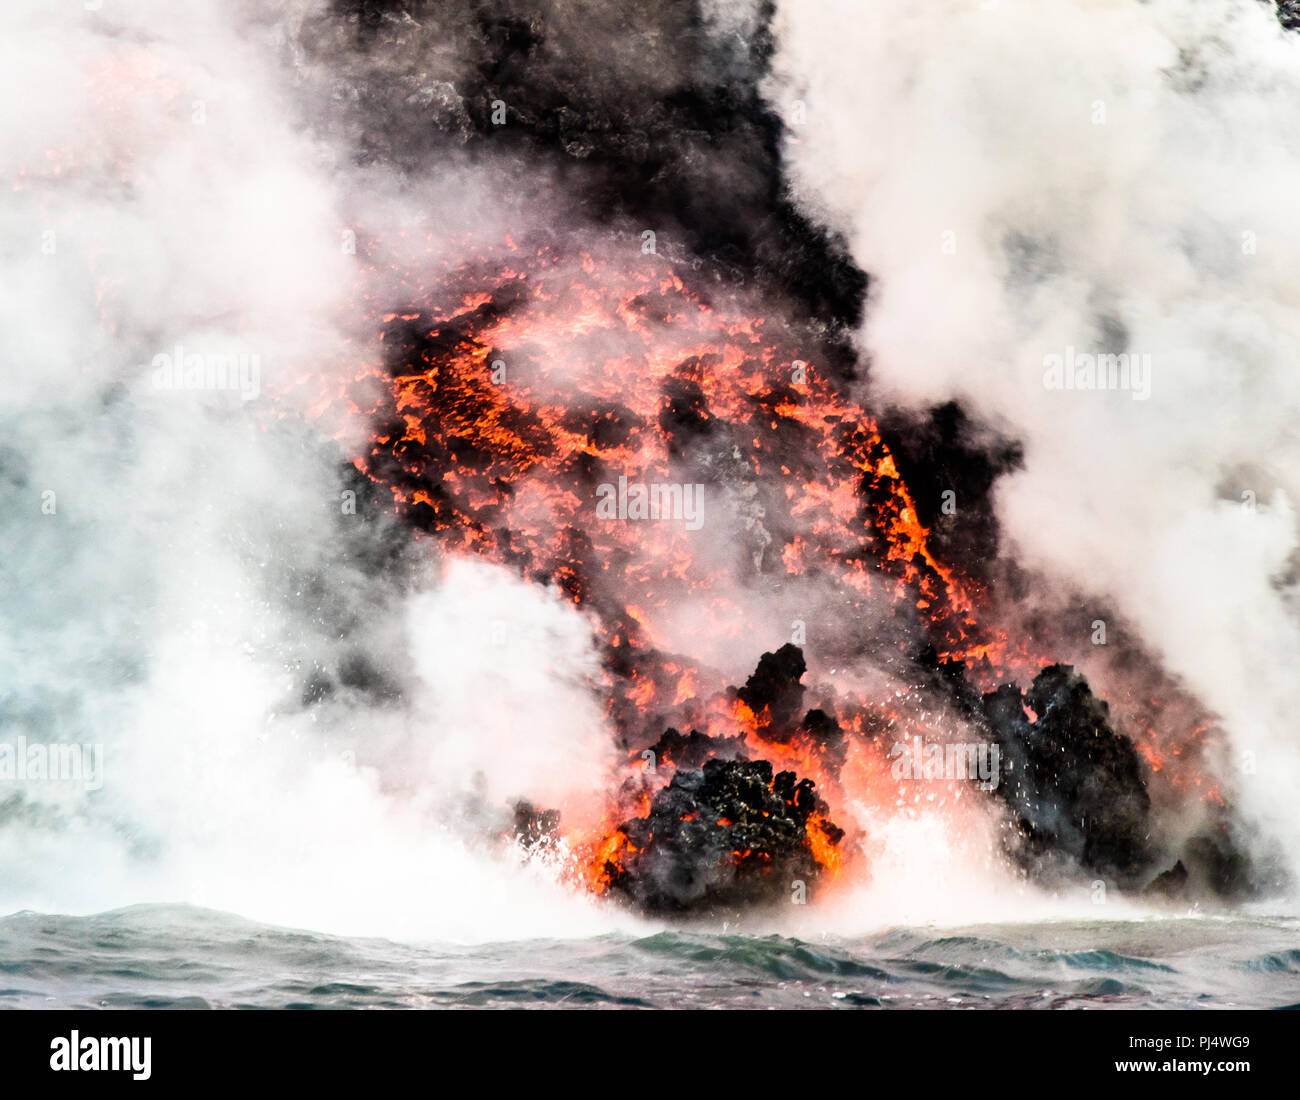 La lave s'écoulant dans océan, près de Punta Moreno de l'éruption de juillet 2018 sur l'île Isabela Cerra Negra, Galapagos, Equateur Banque D'Images